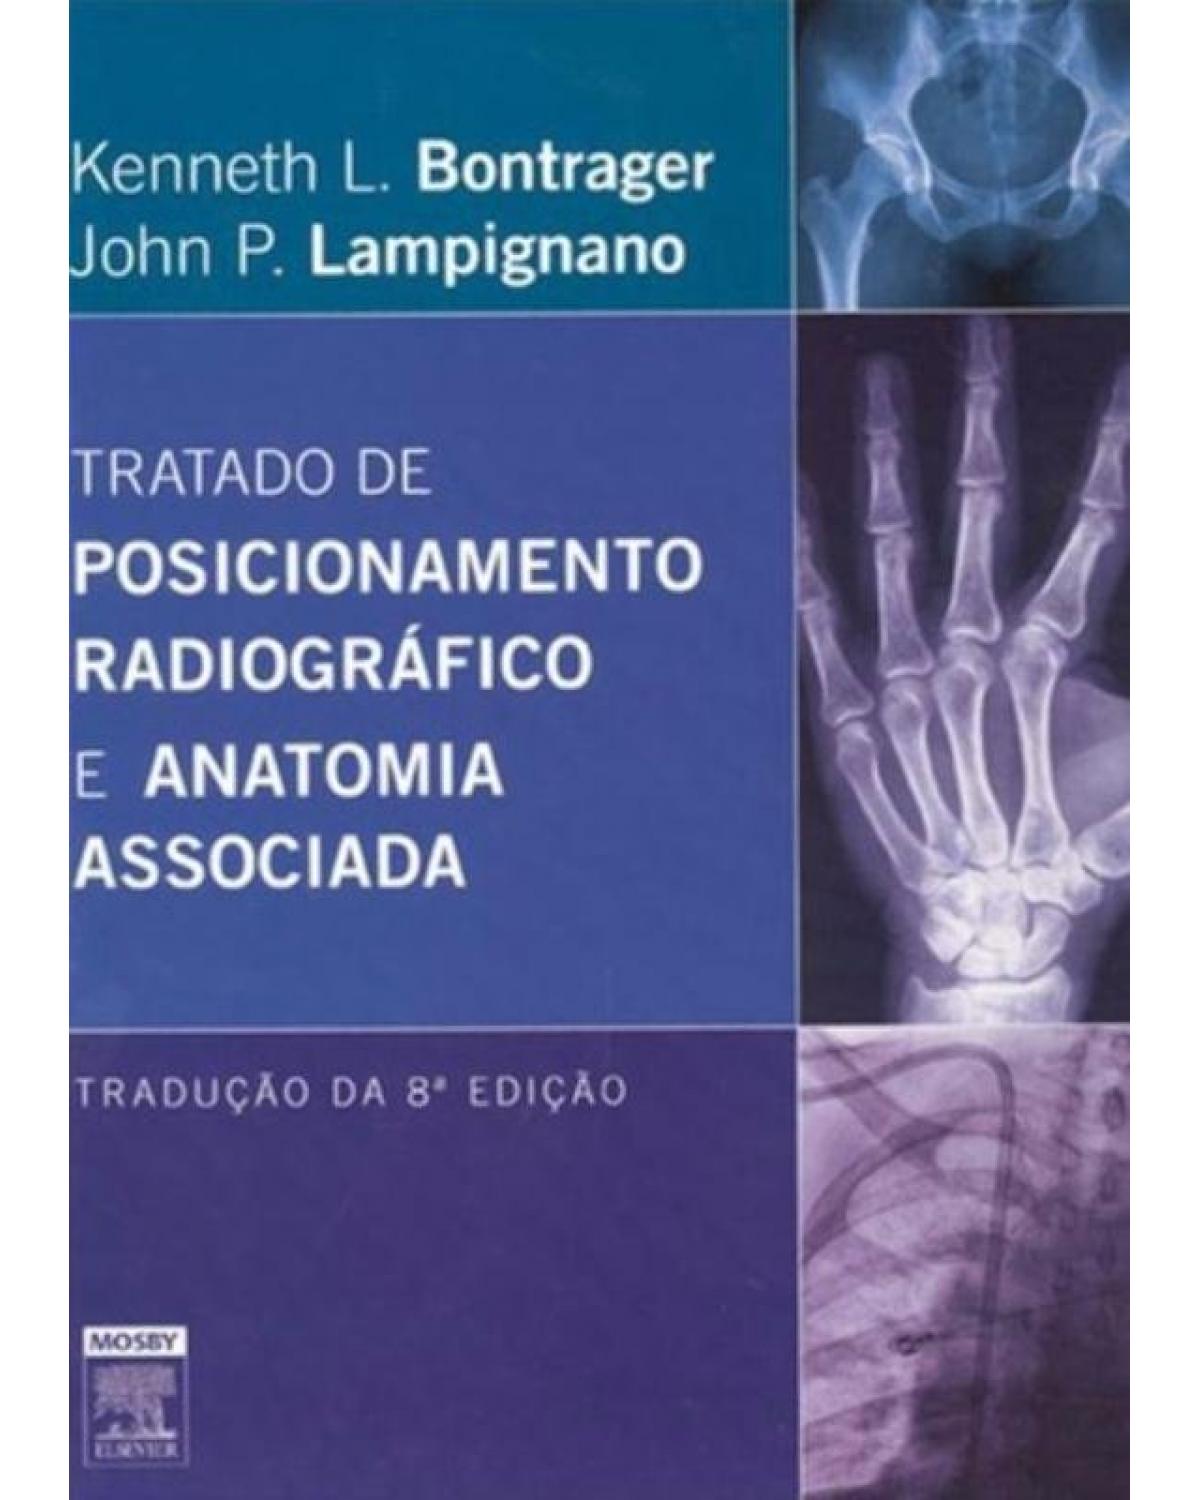 Tratado de posicionamento radiográfico e anatomia associada - 8ª Edição | 2014